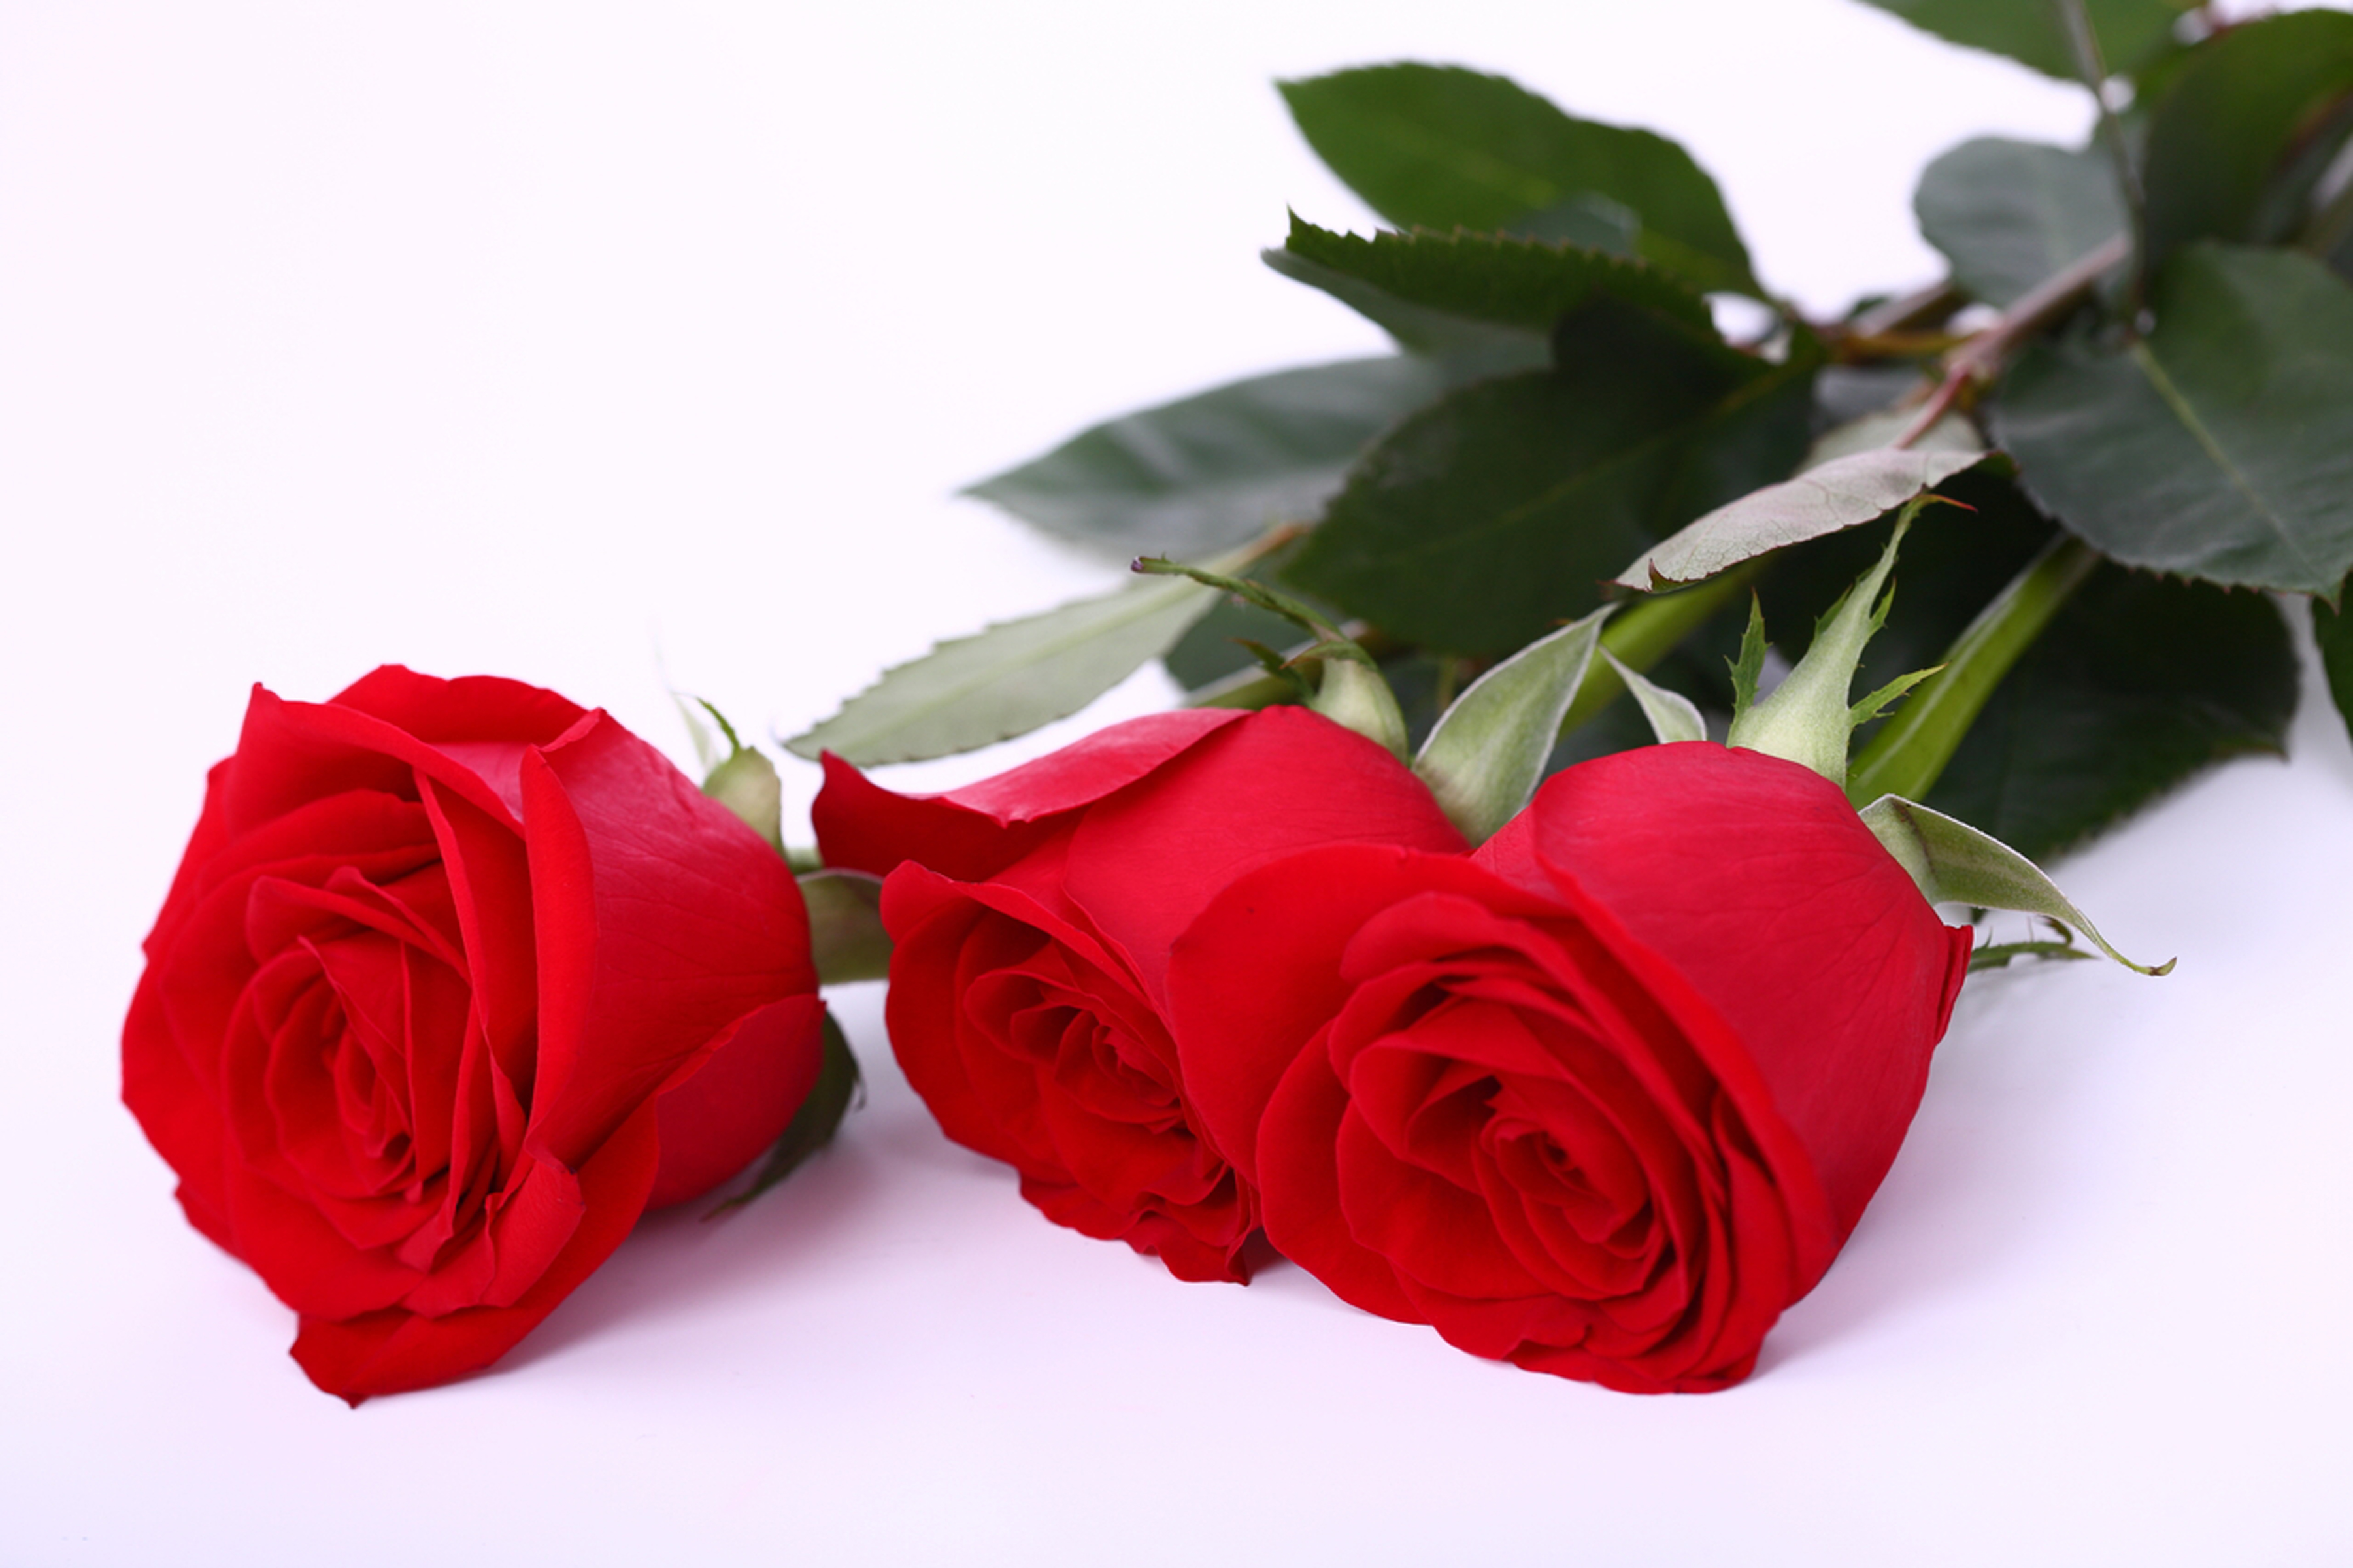 Rose is beautiful. Красивые розы. Красные розы.